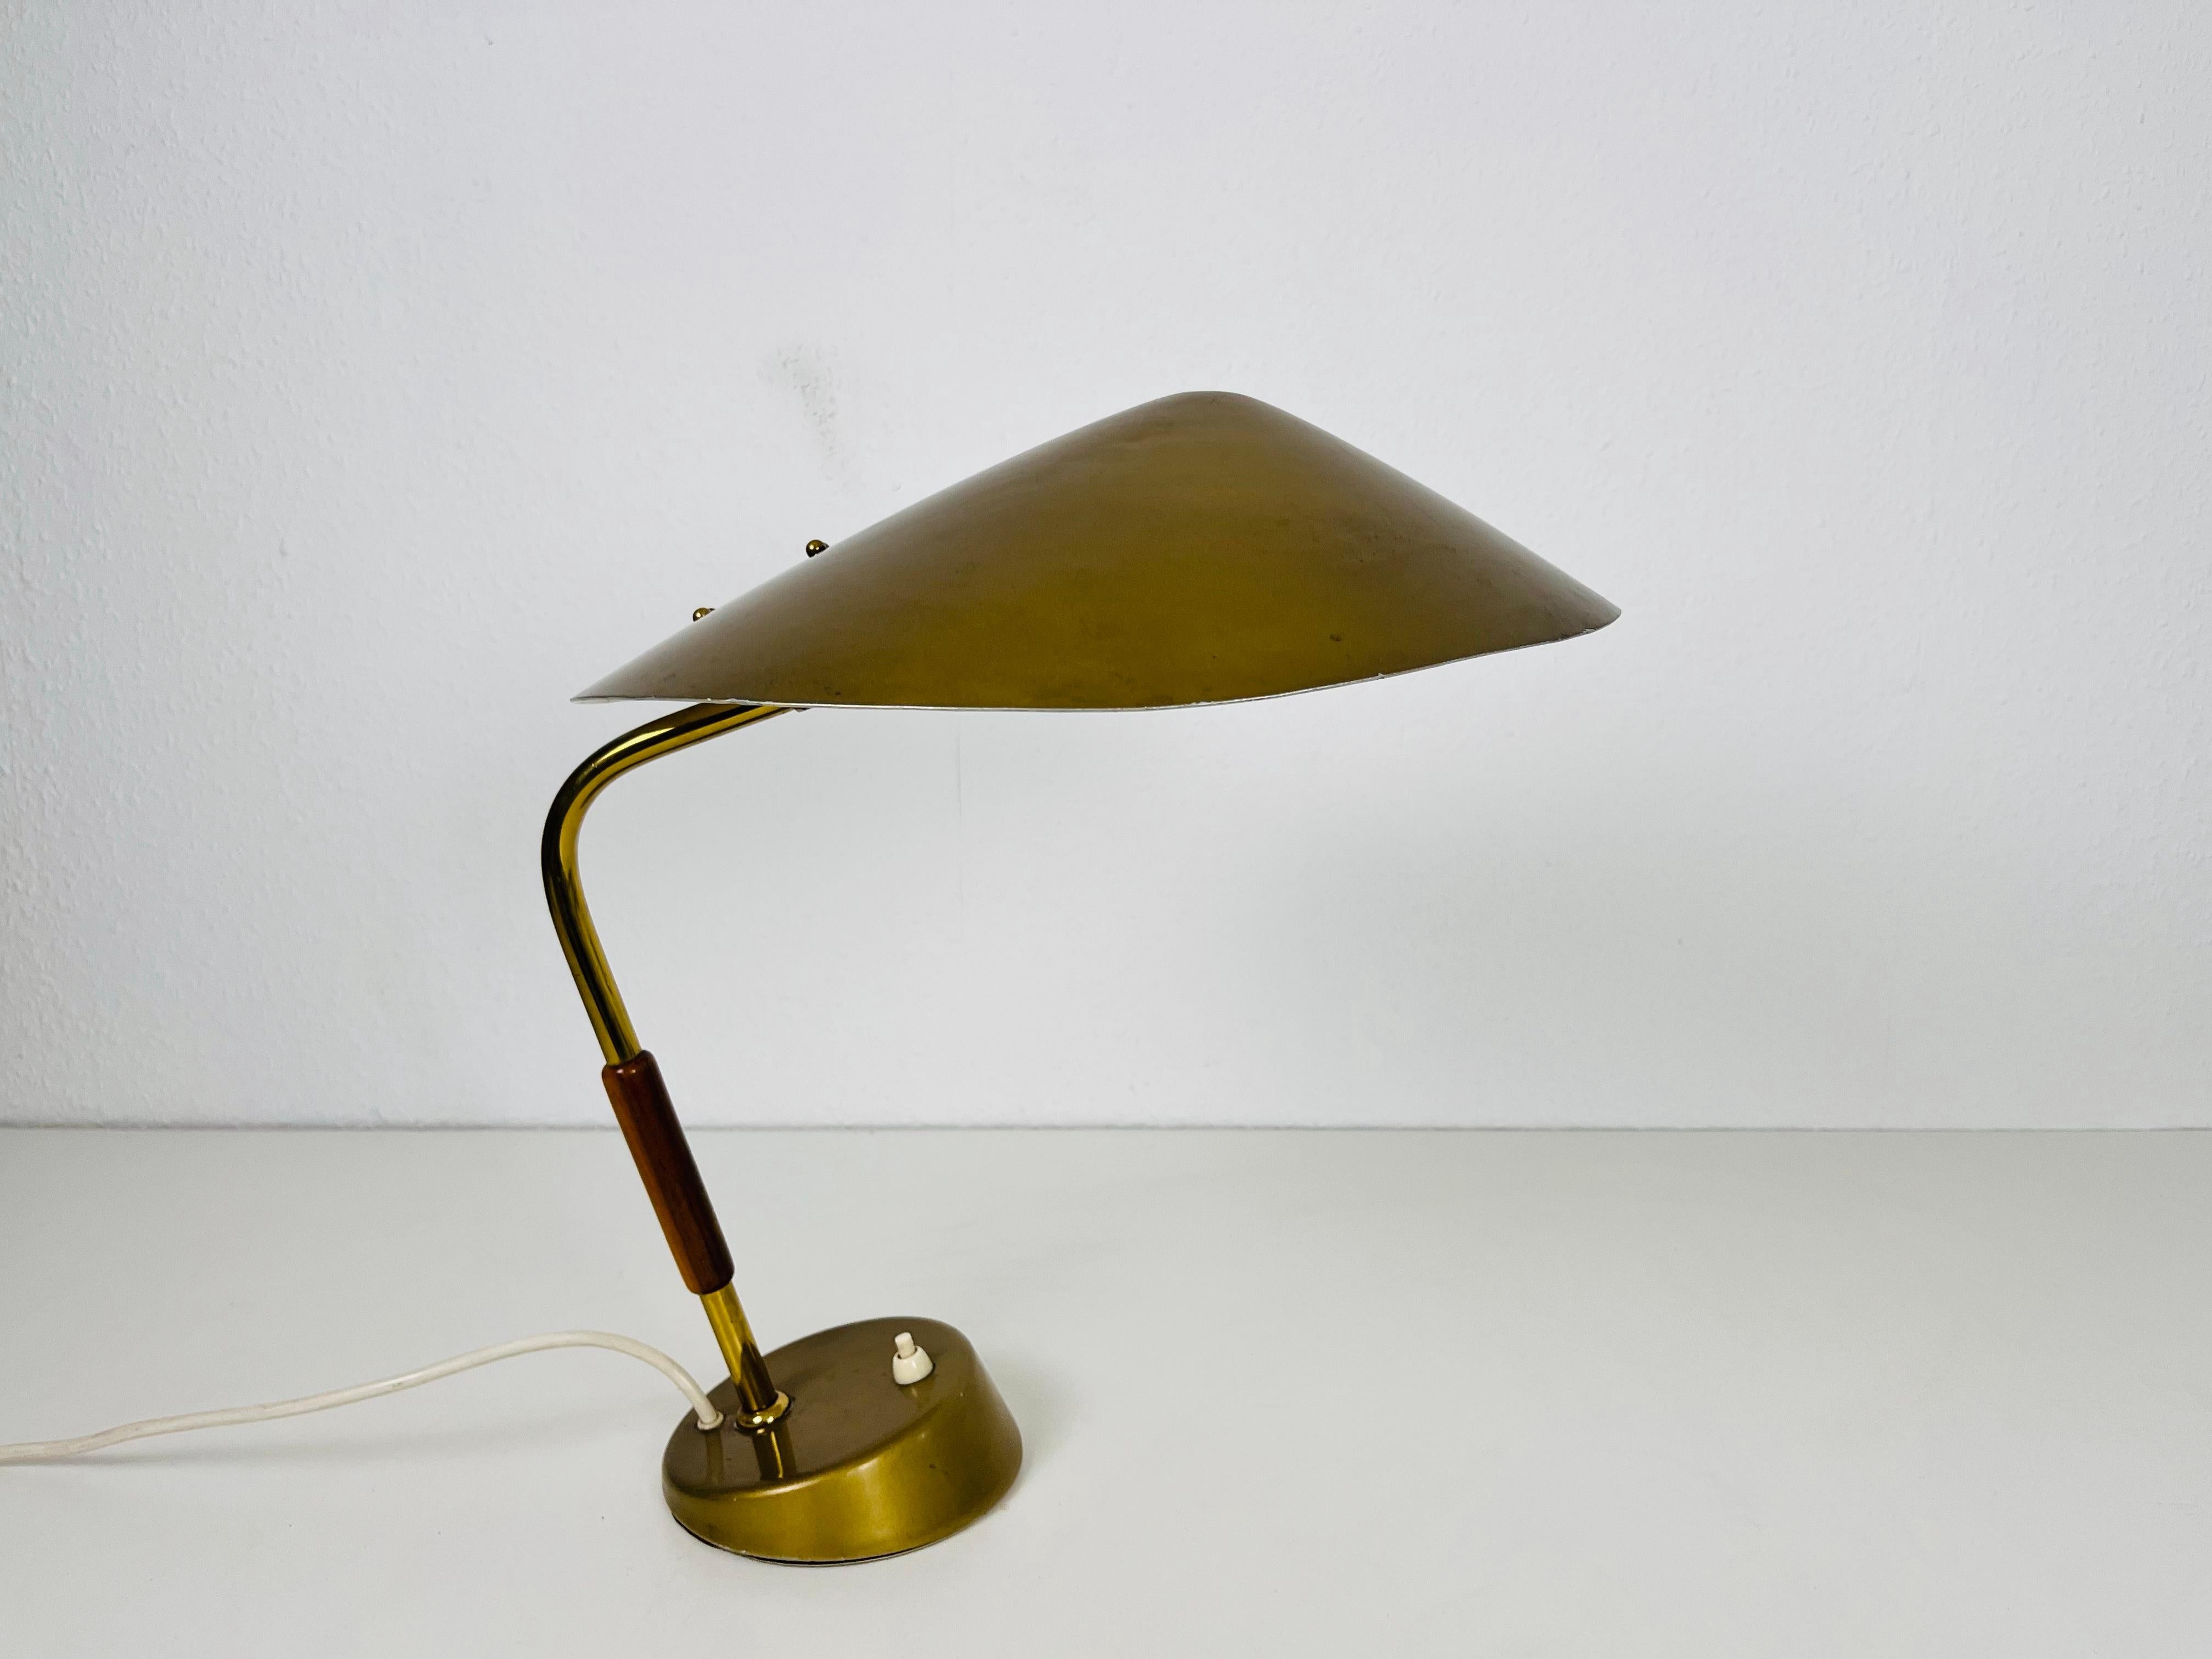 Eine italienische Tischlampe aus den 1960er Jahren. Die Leuchte hat ein außergewöhnliches Design, das an die Tischleuchten von Stilnovo erinnert. Er ist aus Messing mit einem schönen Holzelement.

Die Leuchte benötigt eine E27 (US E26) Glühbirne.